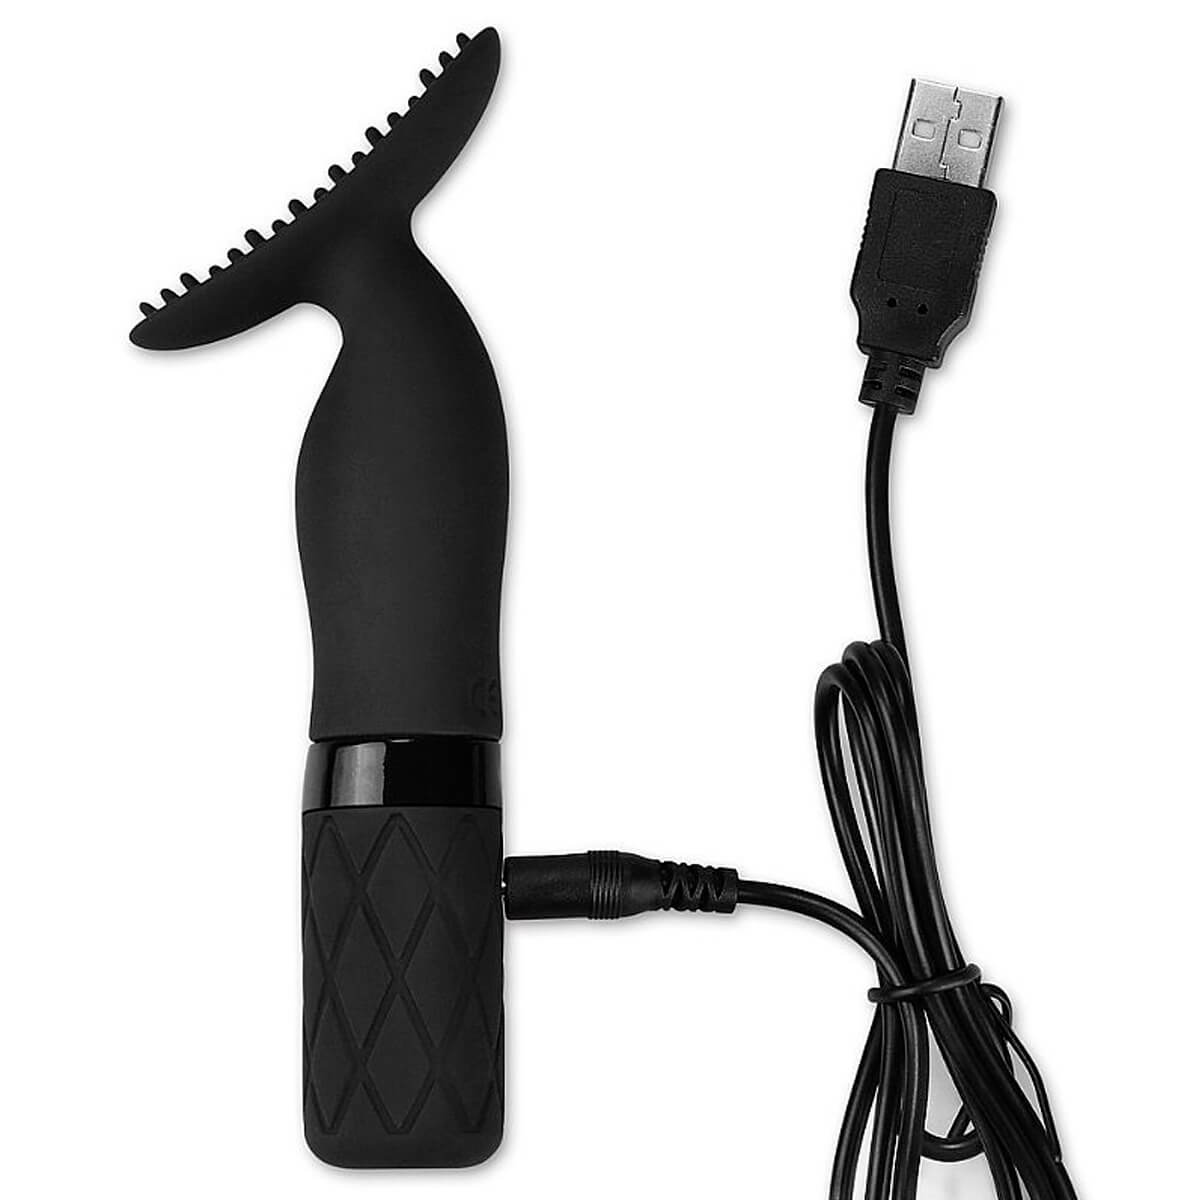 Lovetoy O-Sensual Clit Jiggle Massageador e Estimulador de Clitóris com Vibração Miss Collection